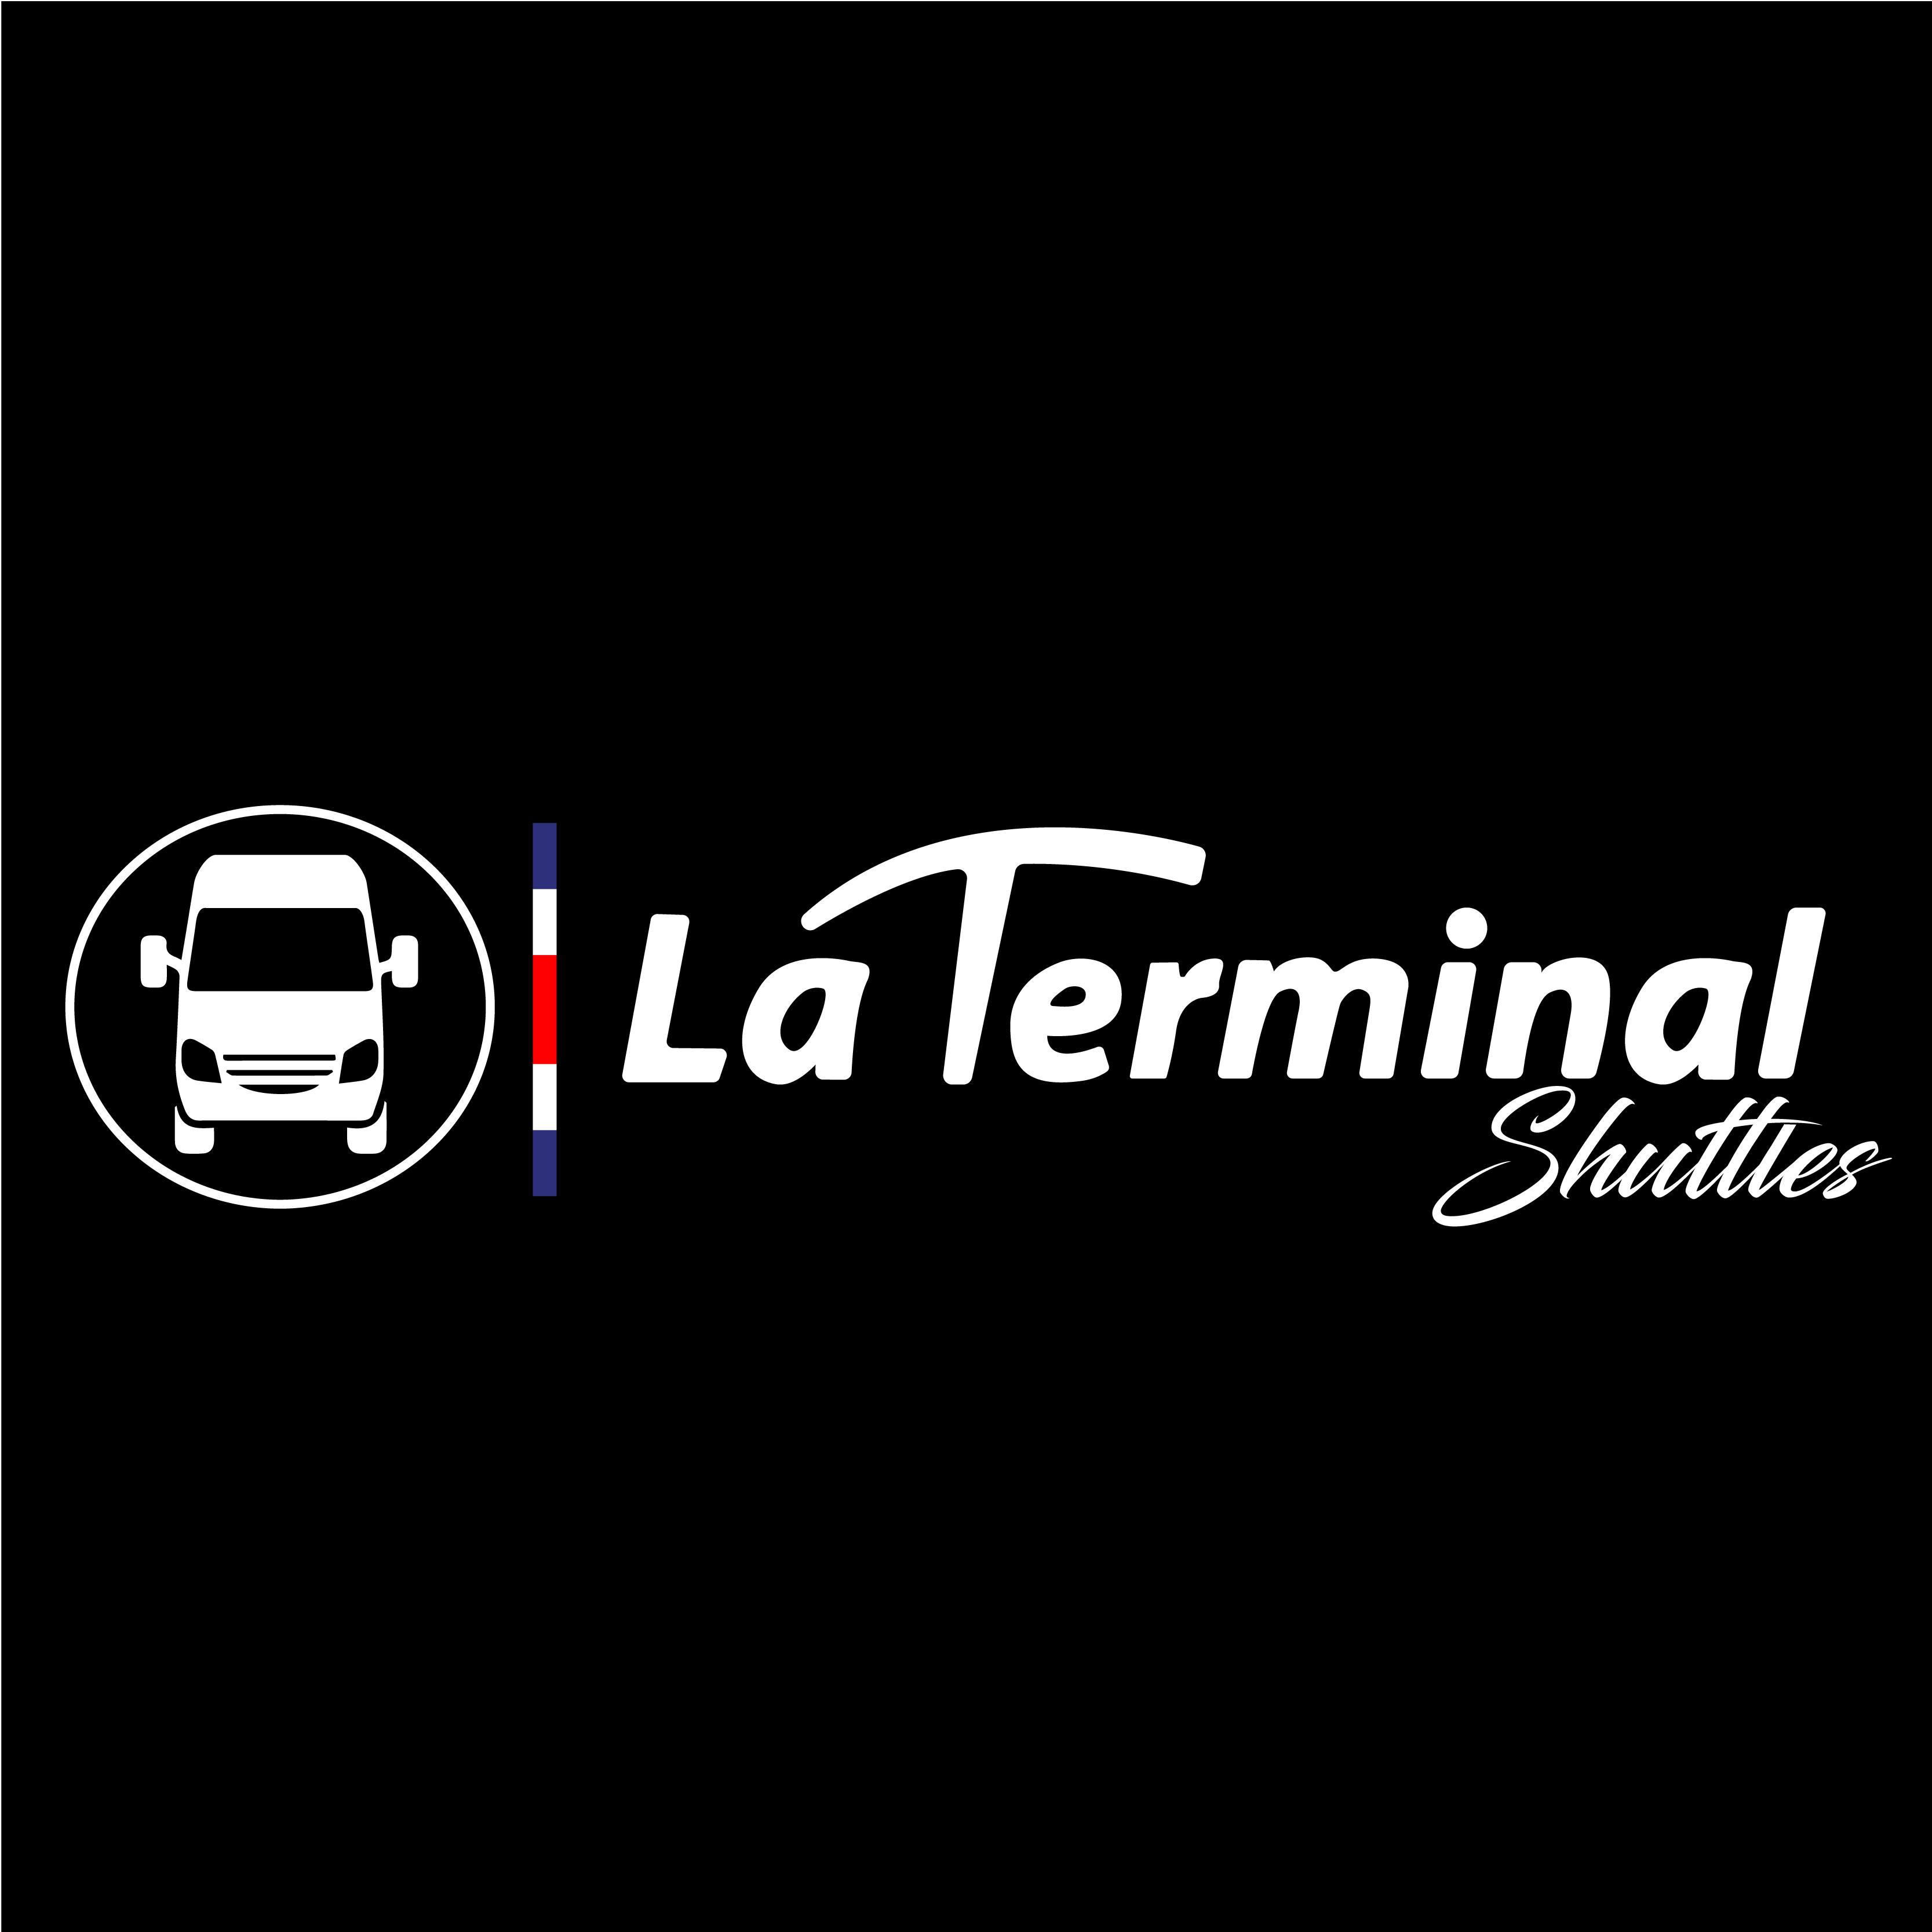 La Terminal Shuttles logo